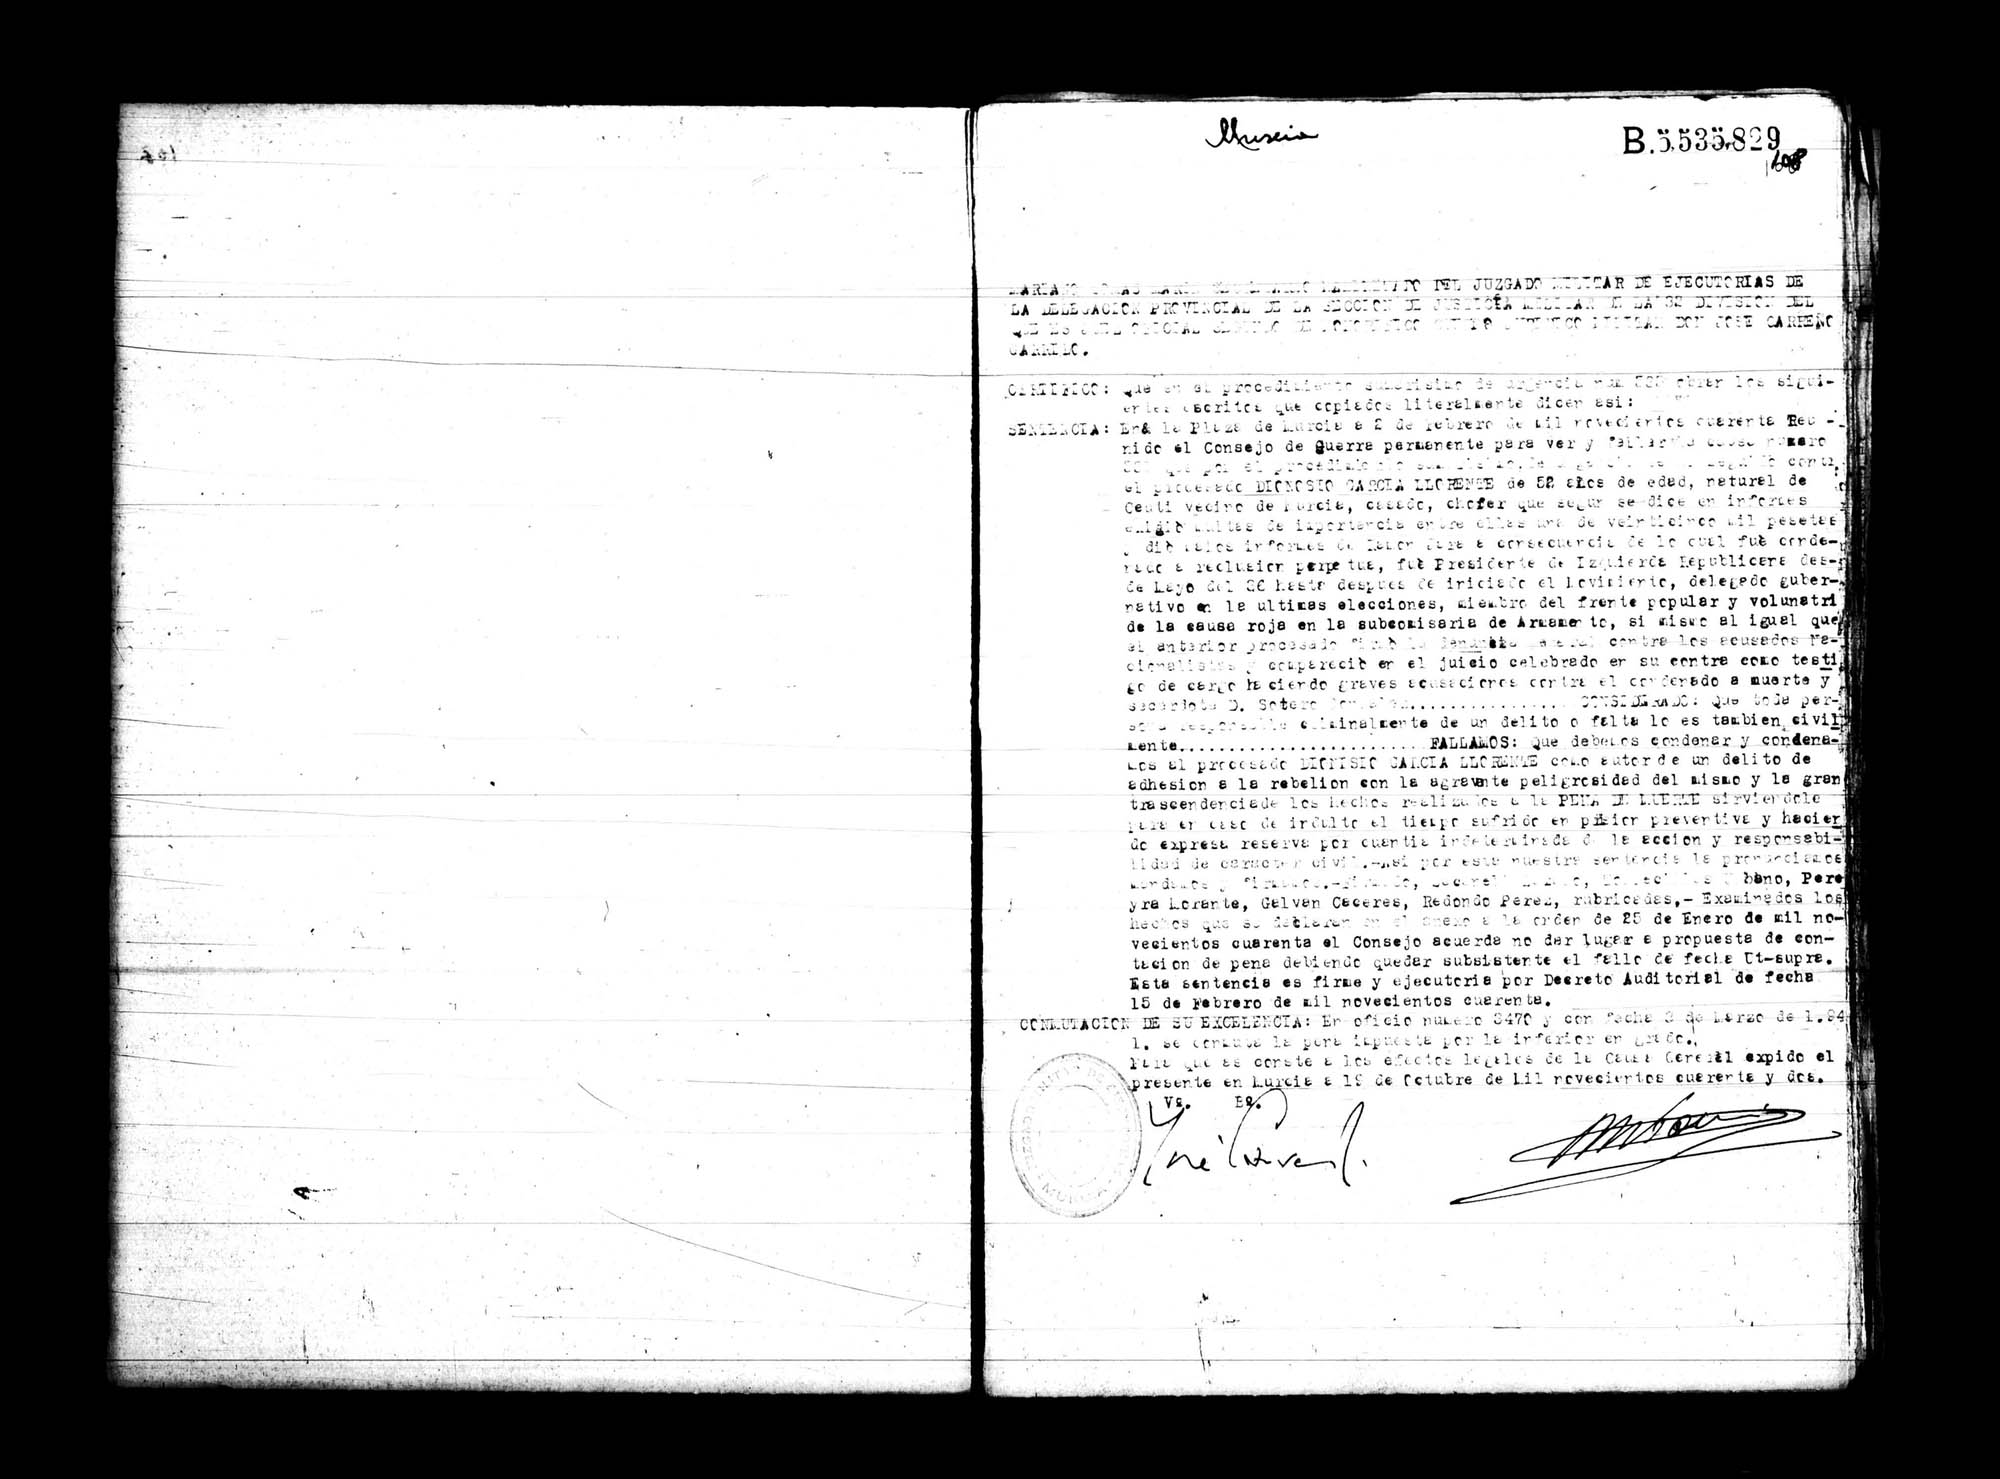 Certificado de la sentencia pronunciada contra Dionisio García Llorente, causa 535, el 2 de febrero de 1940 en Murcia.